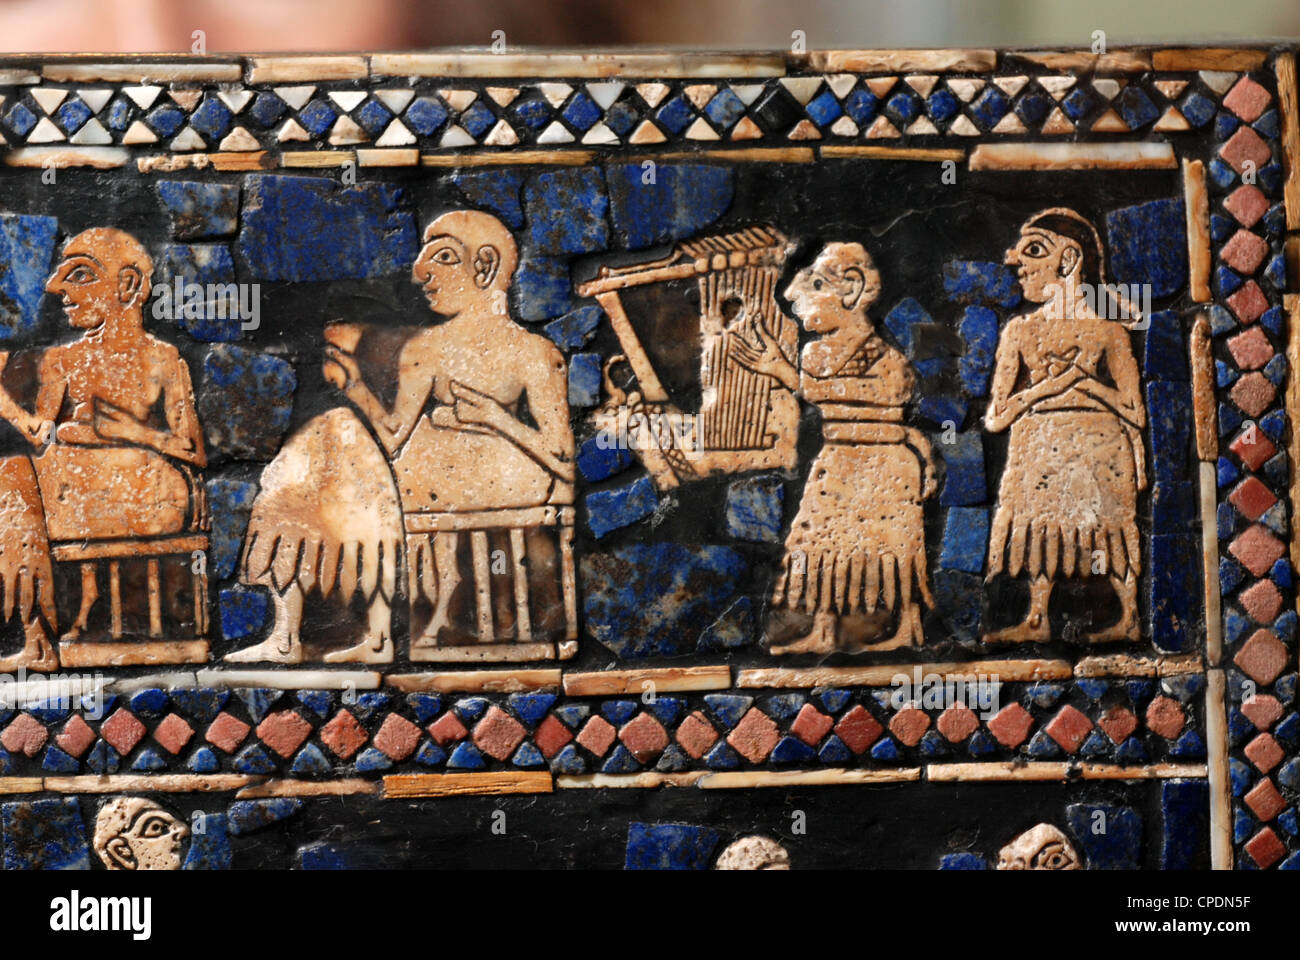 UR DE STANDART, datant de 2600 av. J.-C. UN TRAVAIL D'ART richement décorées, incrustés de COQUILLE ET LAPIS-LAZULI, détail illustrant Banque D'Images